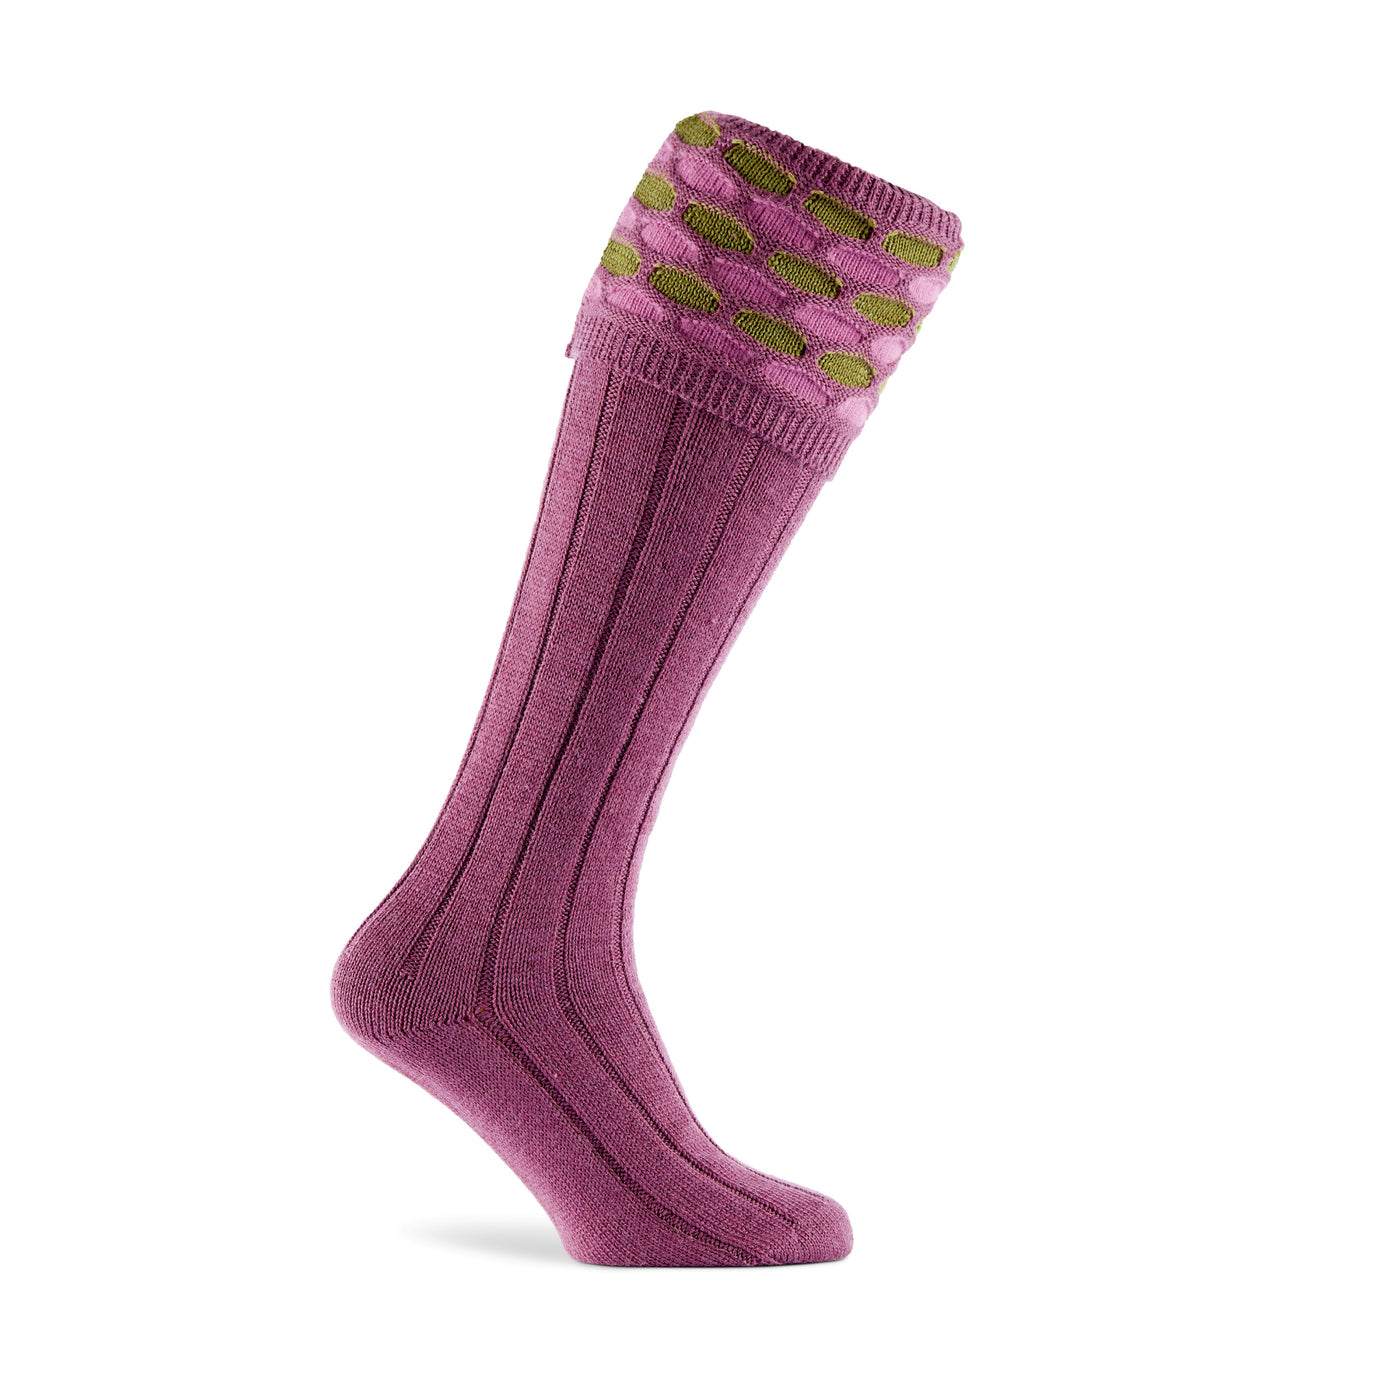 Pennine Cavalier sock, damson